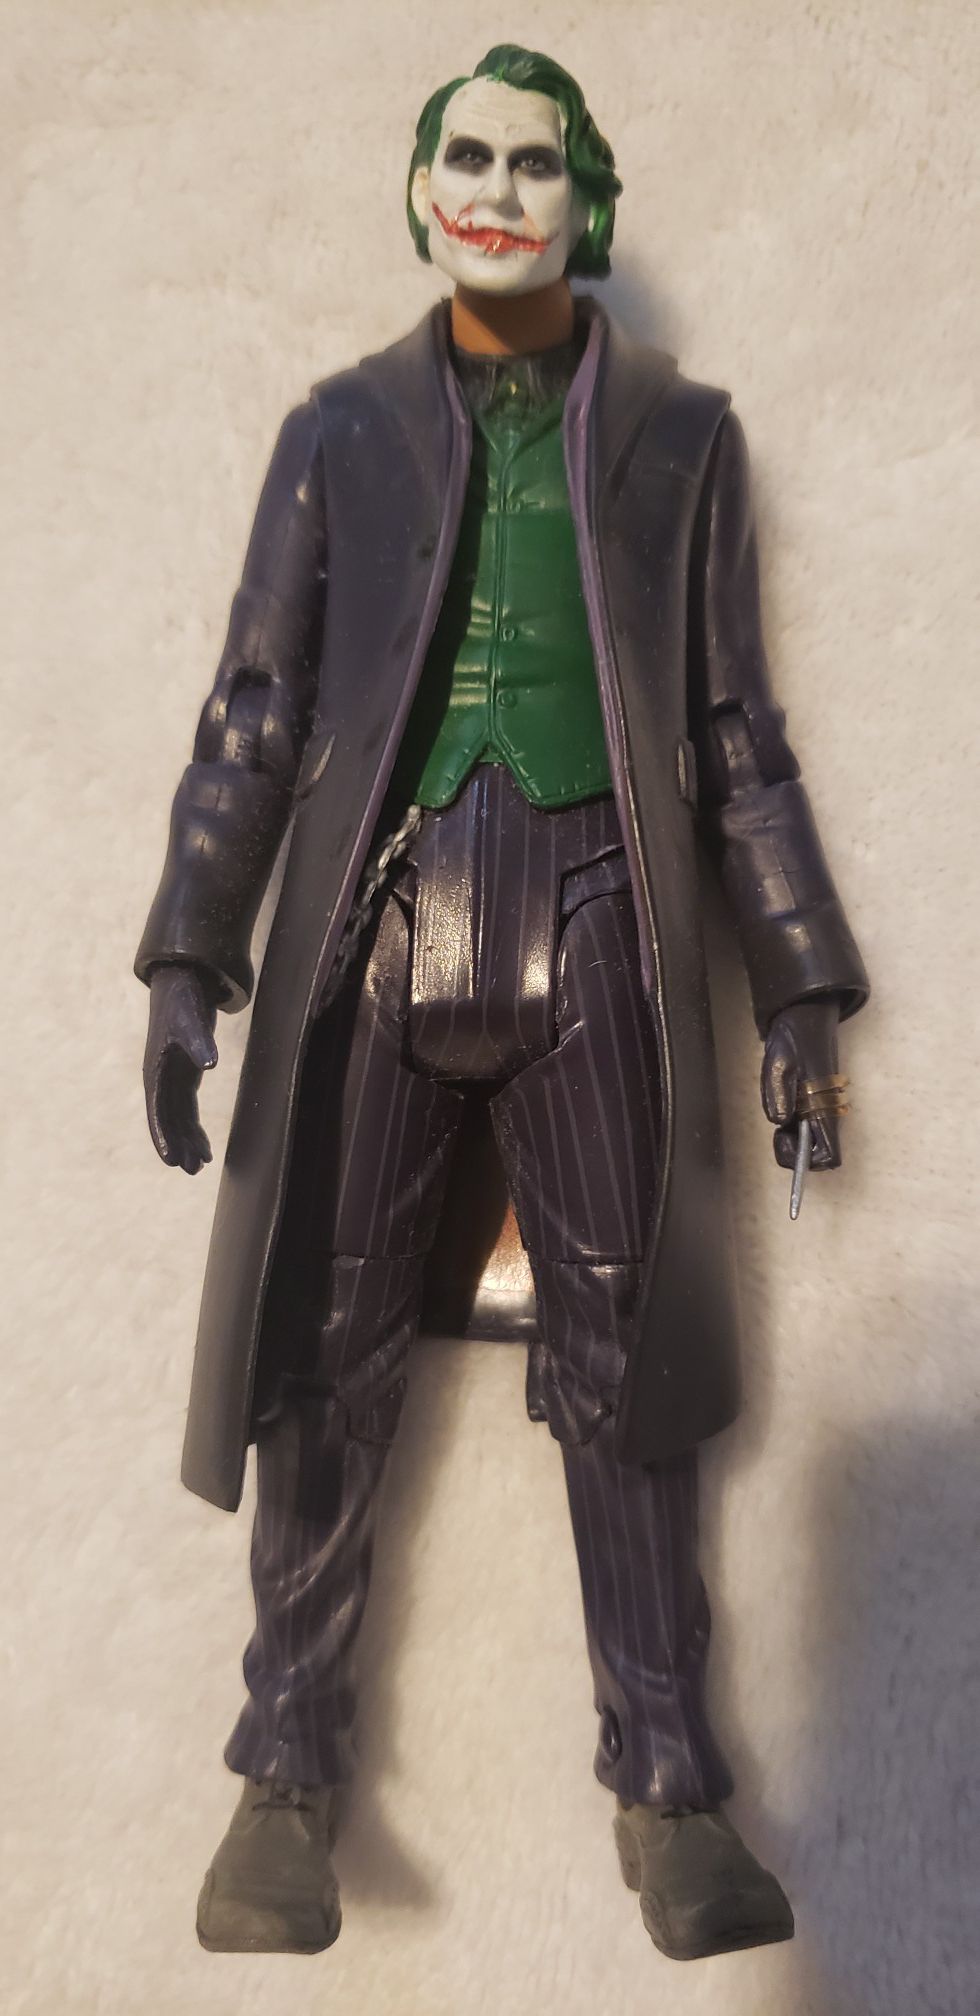 The Dark Knight Heath Ledger Joker action figure